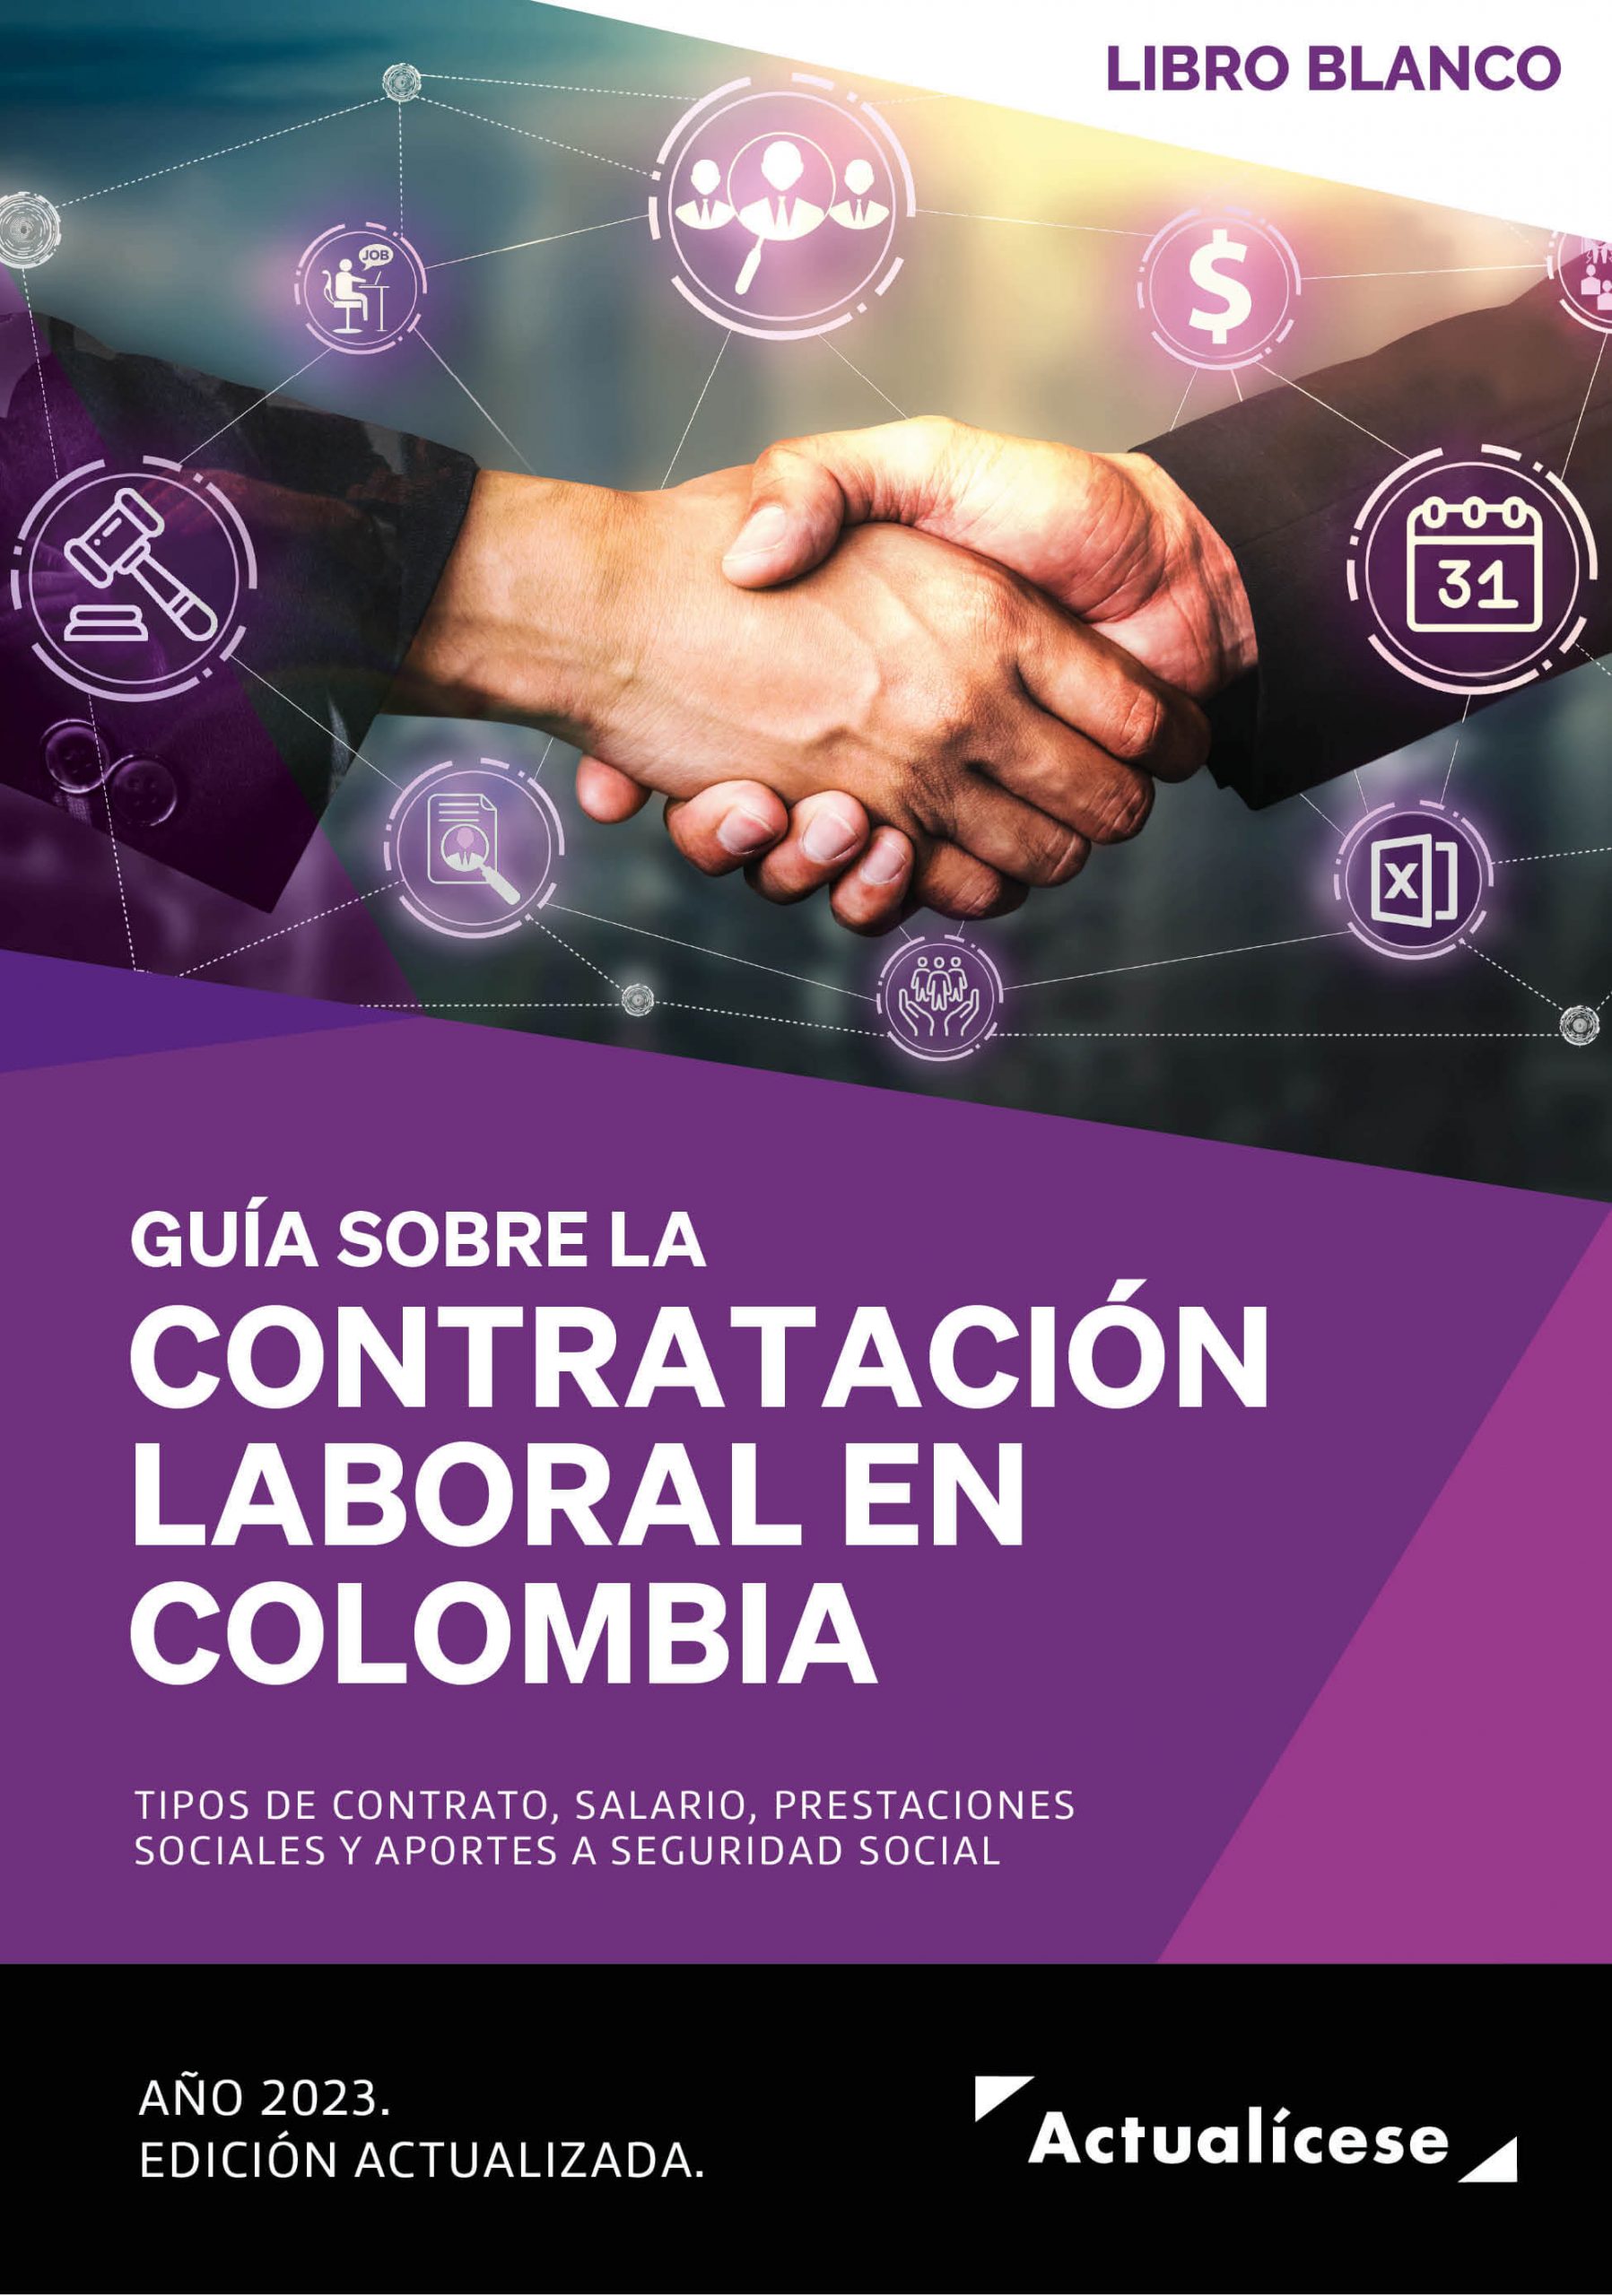 Complementos del Libro Blanco: guía sobre contratación laboral en Colombia, años 2022 y 2023